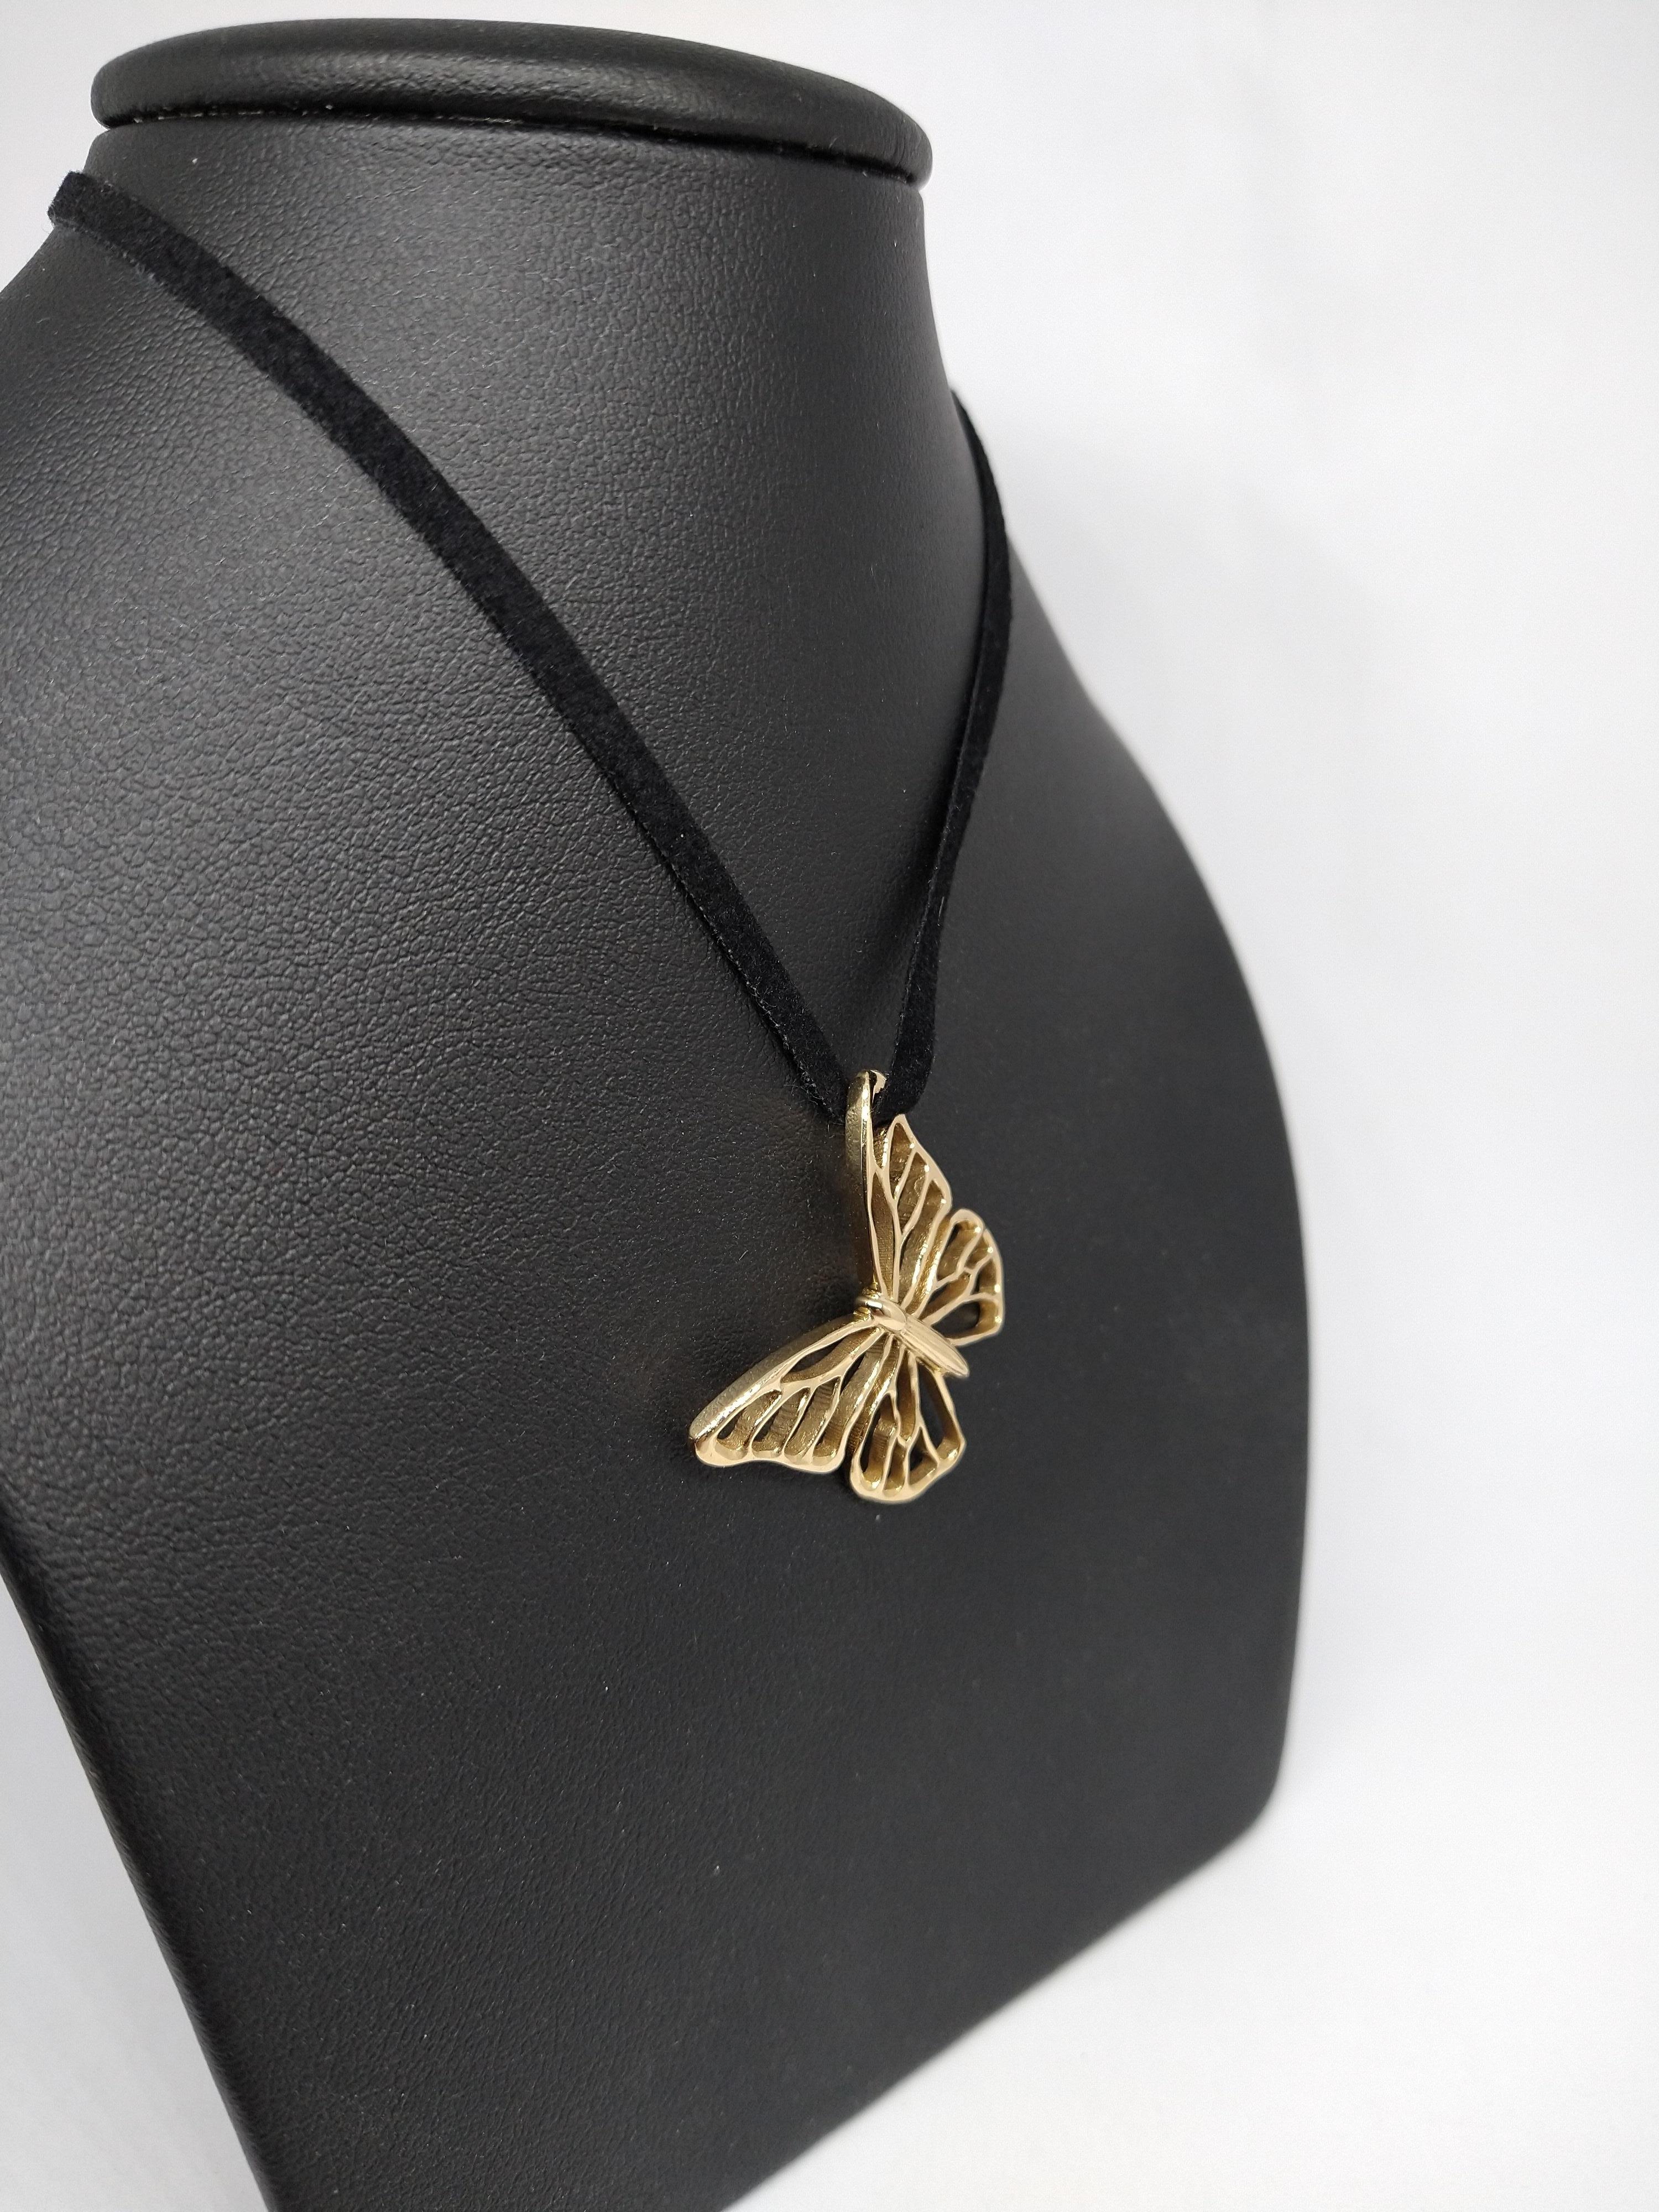 Le designer de Tiffany, Thomas Kurilla, a créé ce collier papillon en or jaune 14 carats sur le daim, K.I.S.S. Restez simple au fil des saisons. Allez, qui peut concevoir mieux que Dieu ? Les papillons doivent être l'une de ses spécialités, avec les